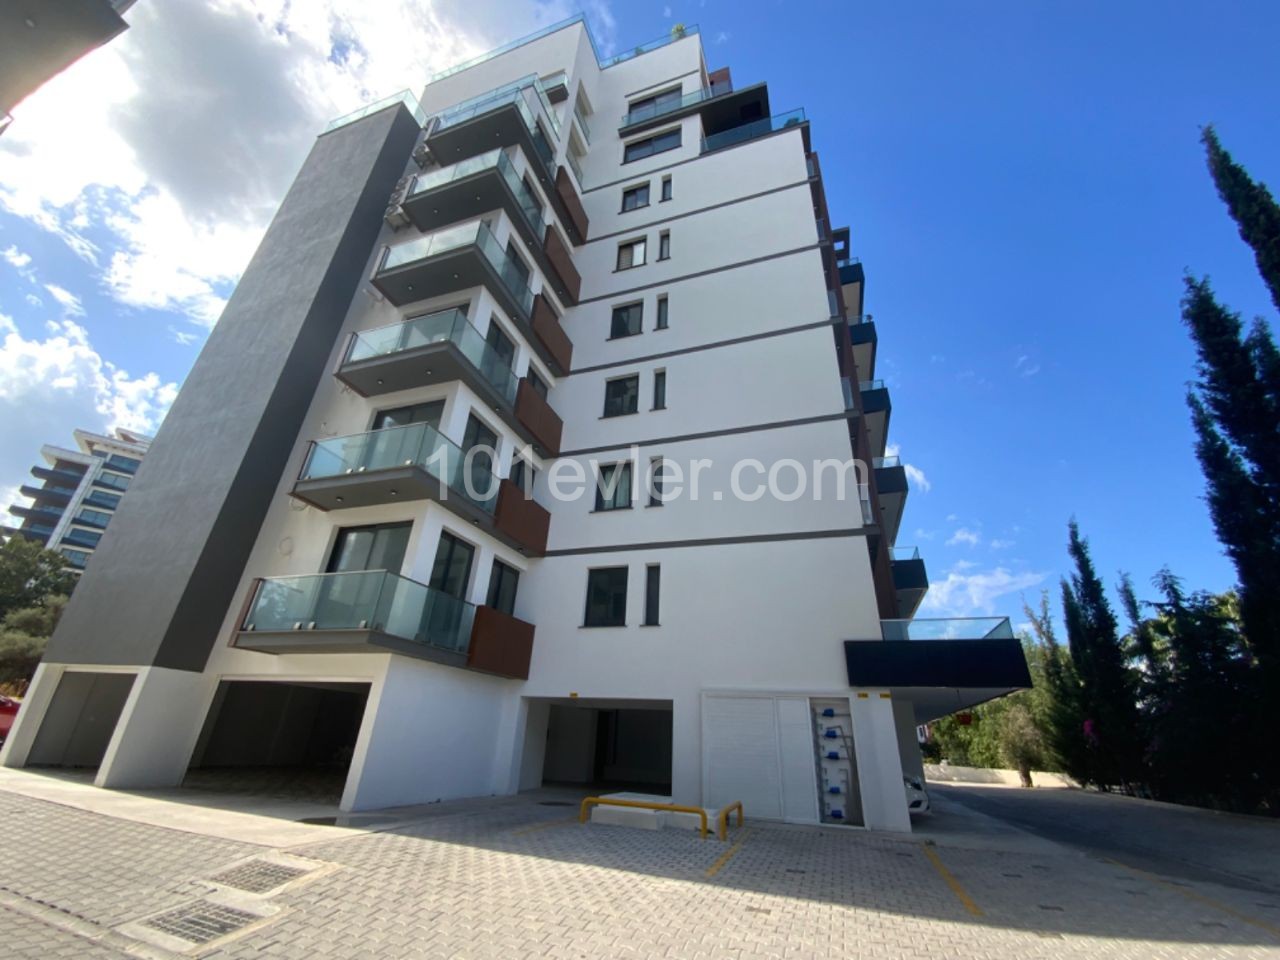 Zypern Kyrenia Zentrum 2 + 1 Wohnung Zu Verkaufen ** 